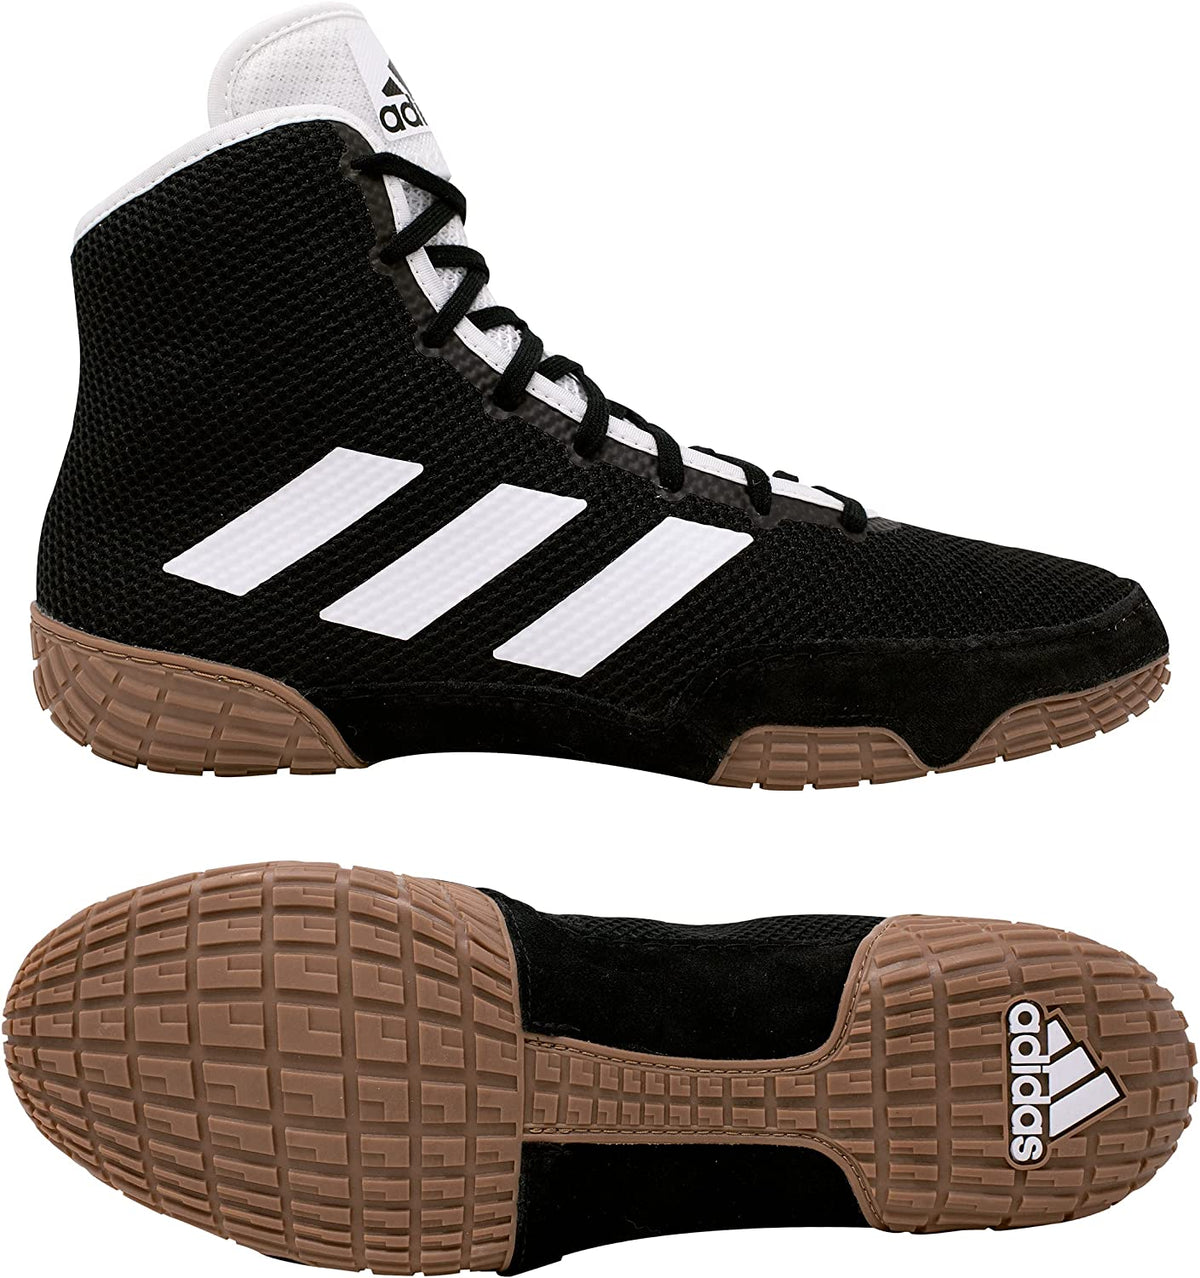 Adidas Tech-Fall cīkstēšanās apavi melnā krāsā. Tagad par labāko cenu vietnē Phantom Athletics . Adidas cīkstēšanās apavi ir vieni no vispieprasītākajiem cīkstoņu apaviem visā pasaulē, jo tie piedāvā izcilu kvalitāti kopā ar maksimālu komfortu. Izturīgā zole nodrošina saķeri uz cīkstēšanās paklāja. 